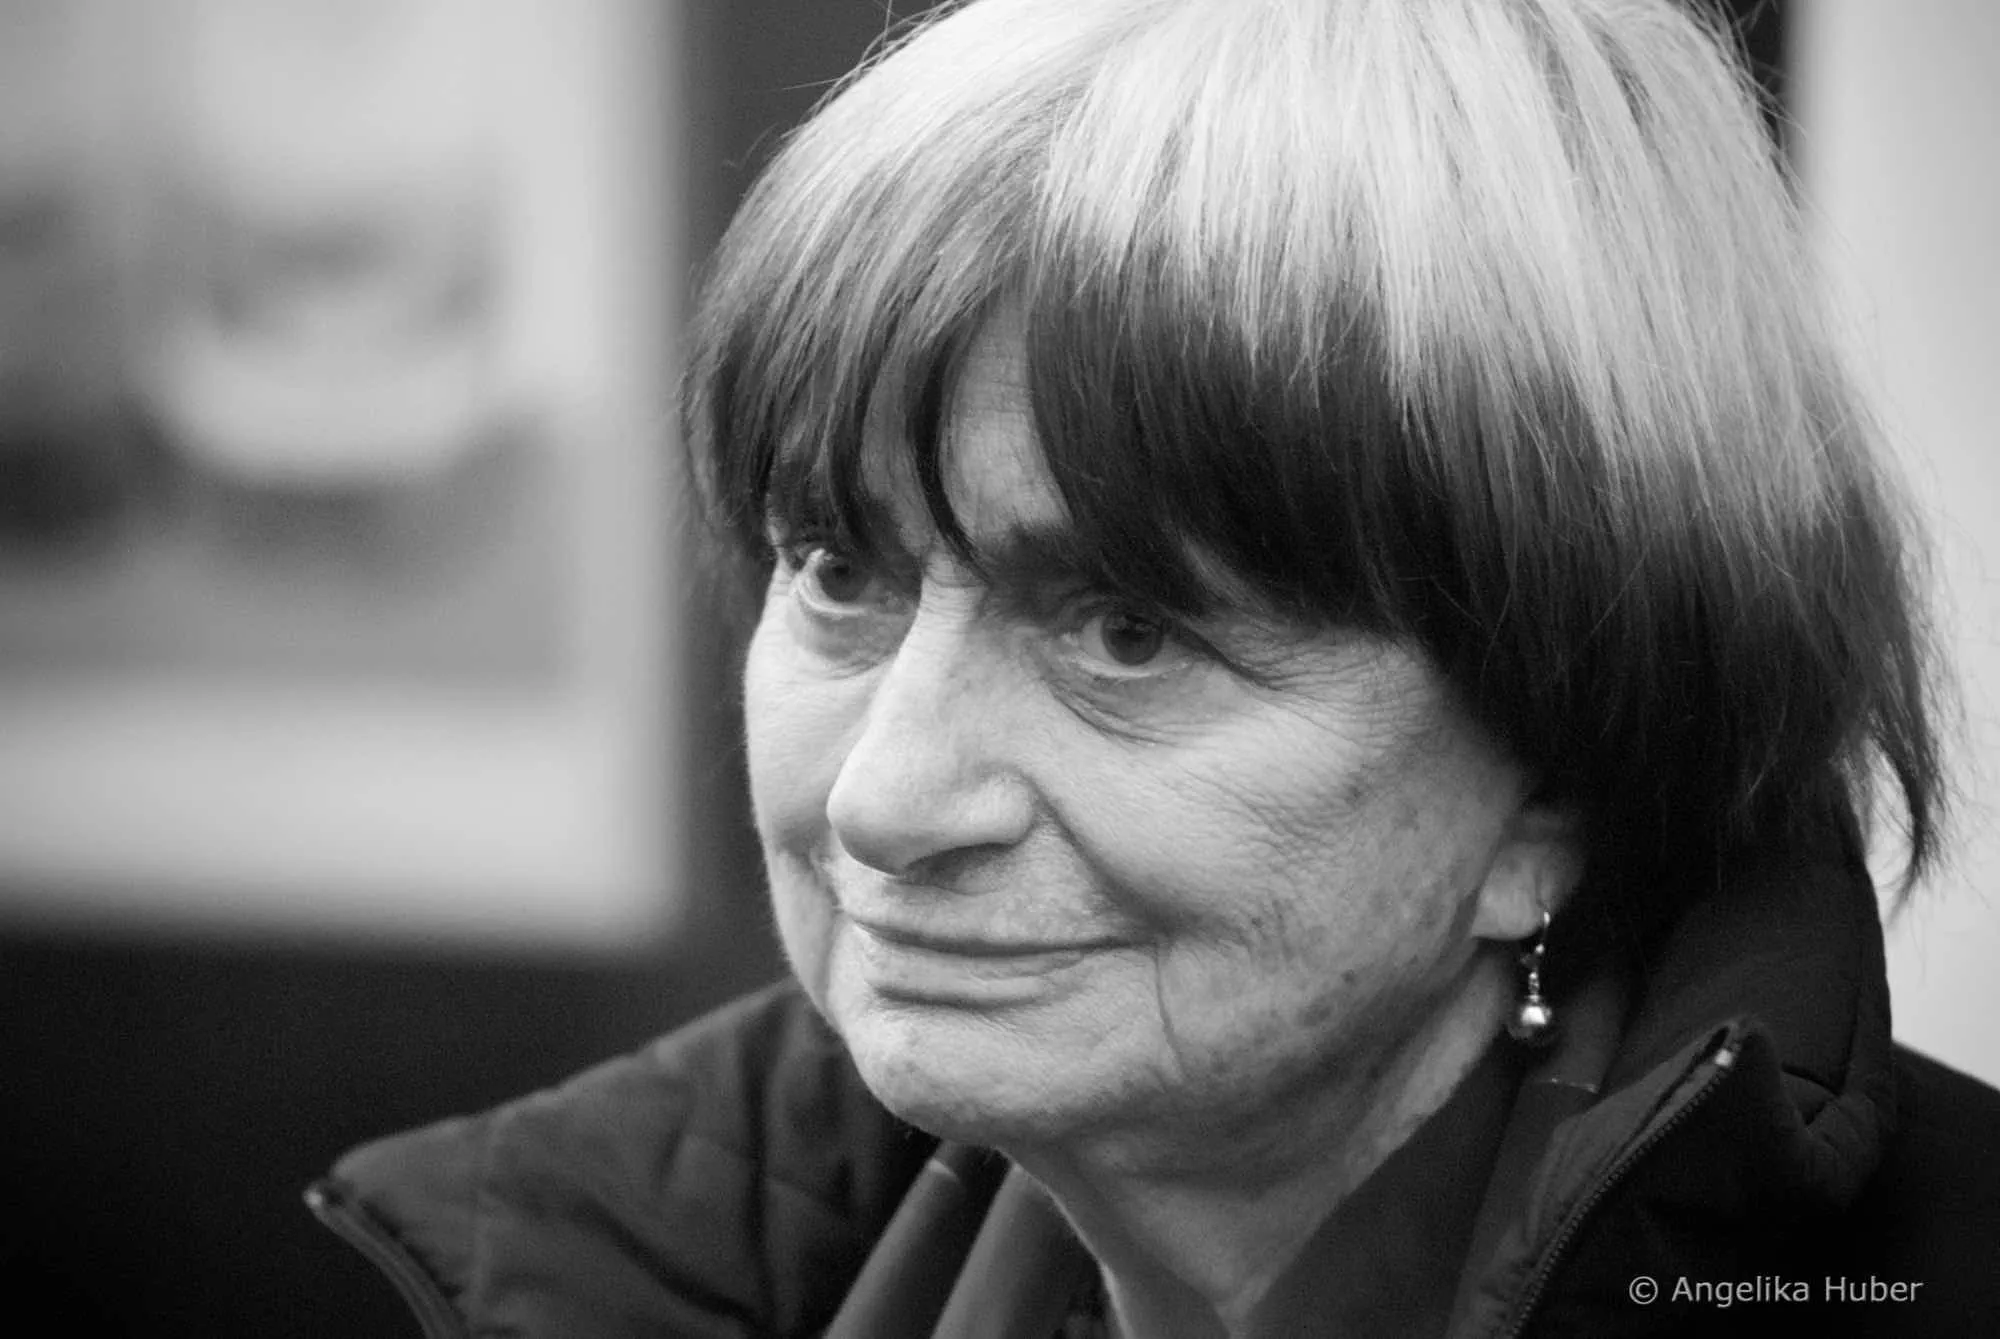 Hommage à Agnès Varda